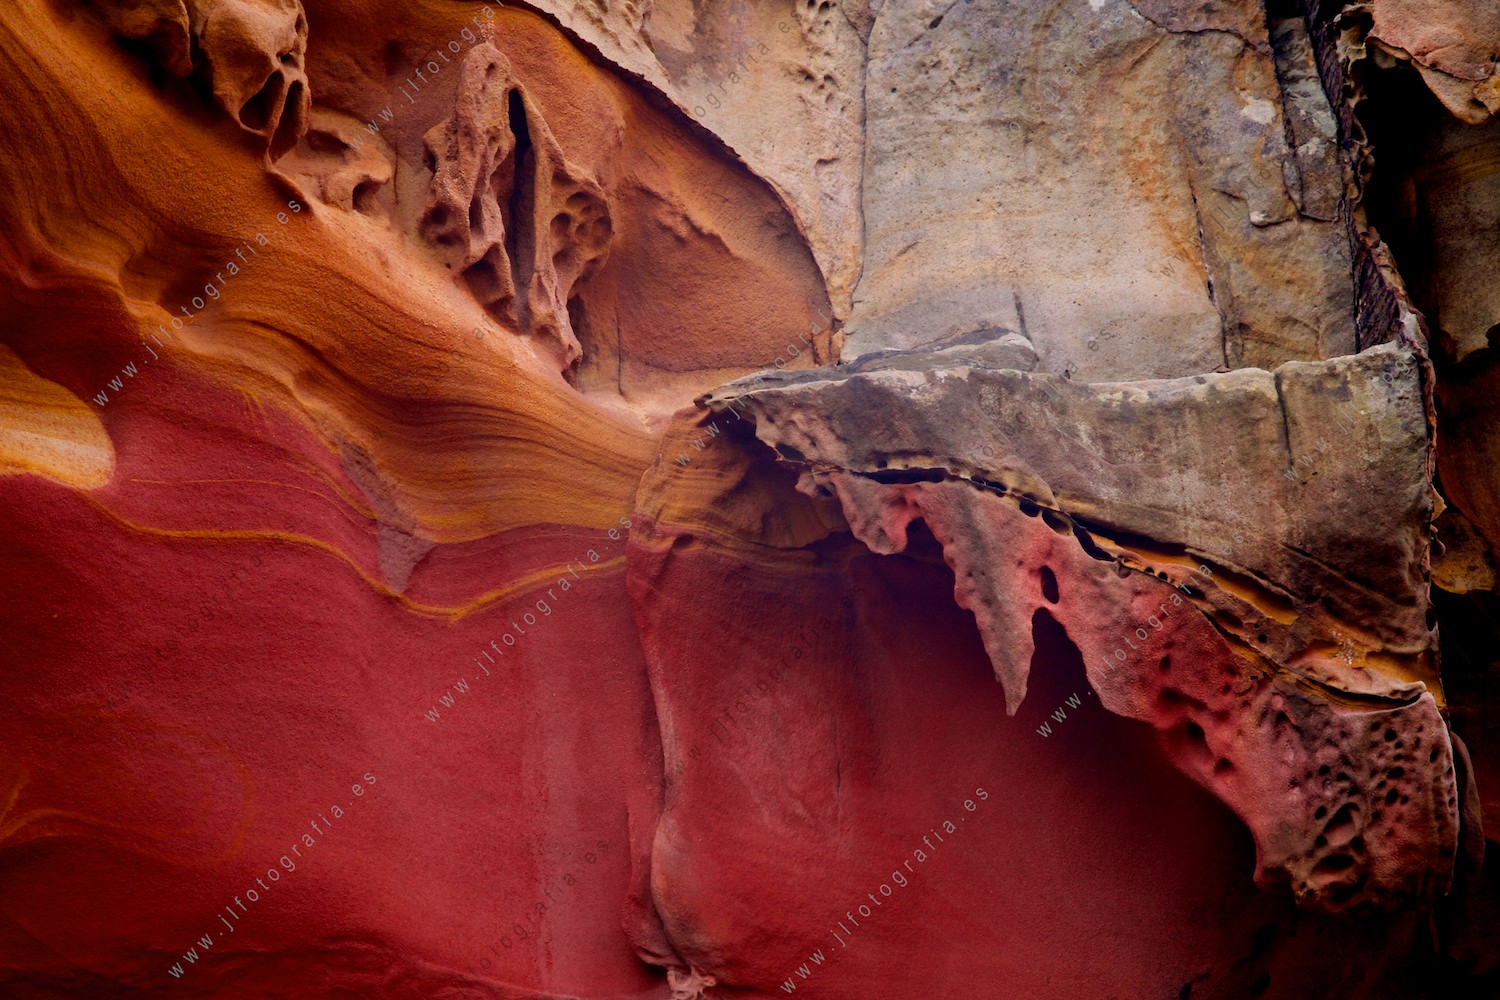 Formas, colores y texturas que se forman en el valle de los colores de Jaizkibel, tonos rojos y naranjas